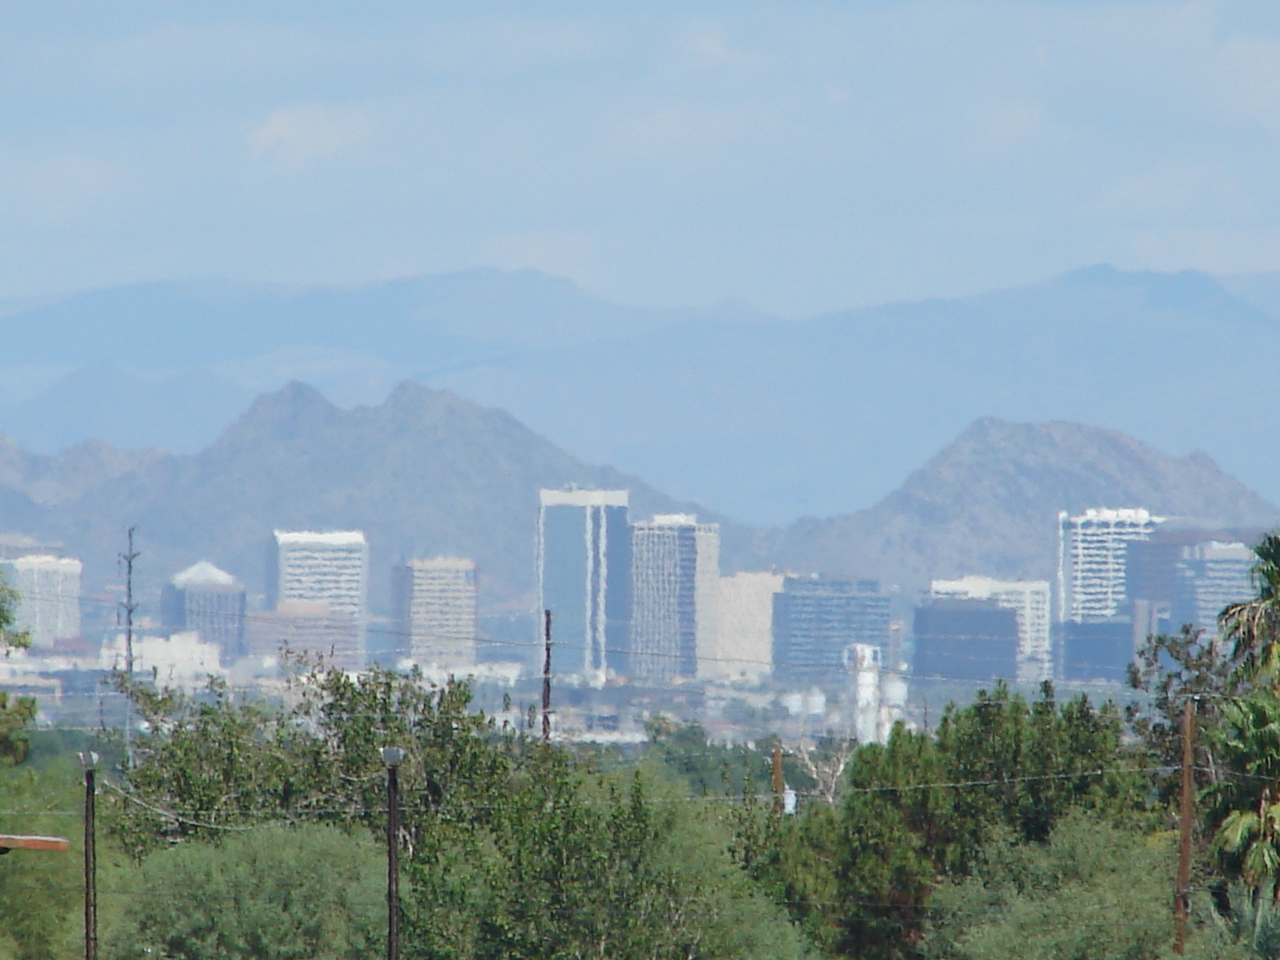 City of Phoenix View